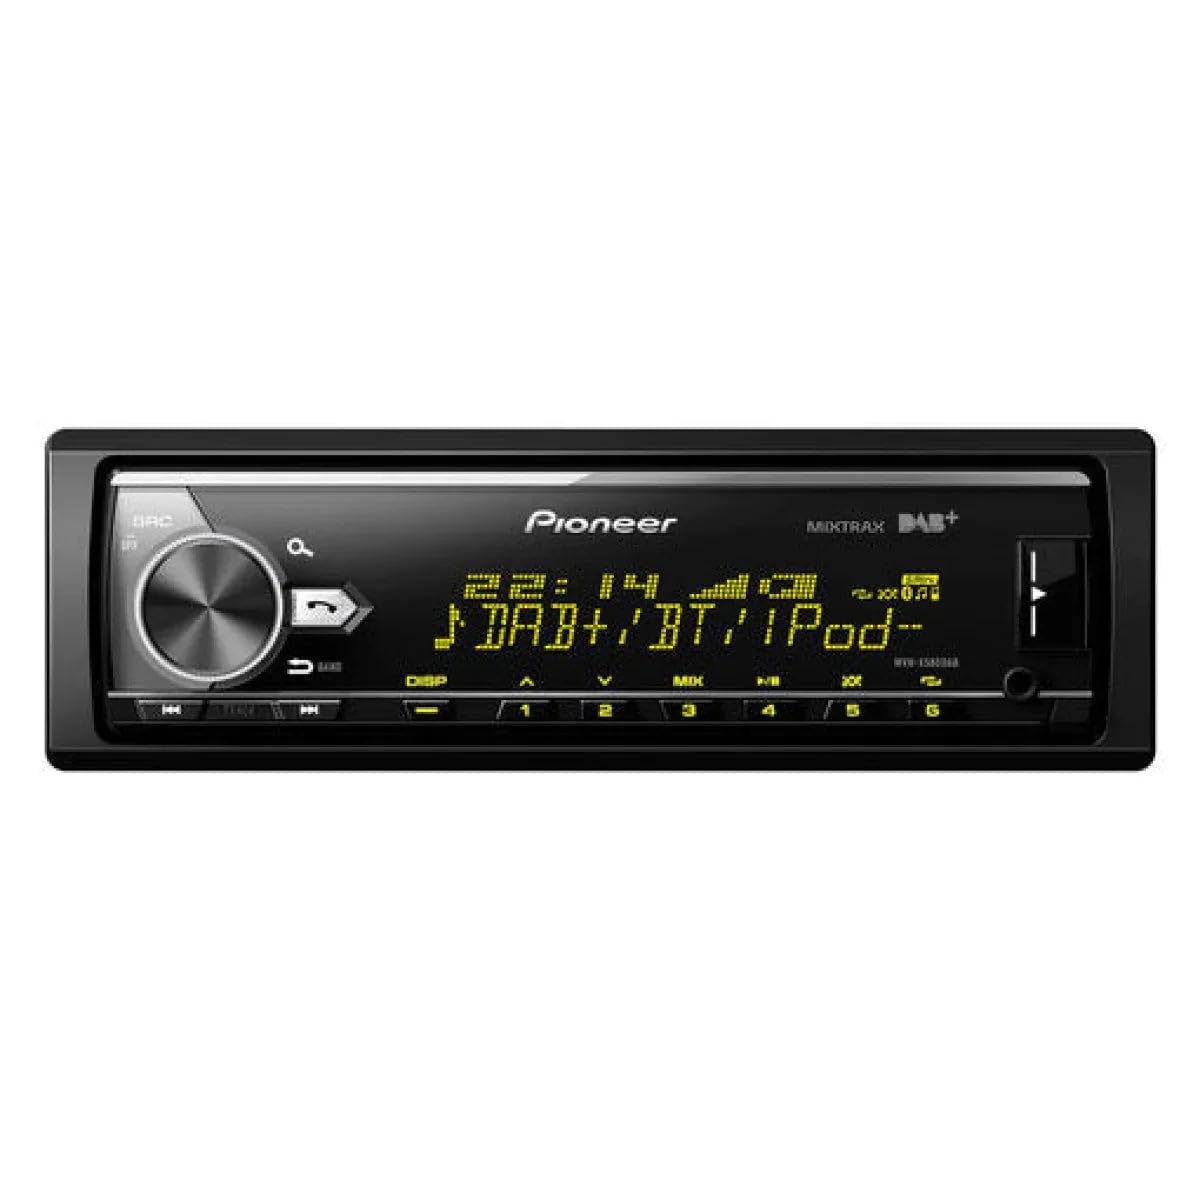 Pioneer MVH-X580DAB, 1-DIN-Autoradio mit DAB+, RGB, deutsche Menüführung, Bluetooth, USB, AUX-Eingang, iPod/iPhone-Direktsteuerung, Freisprecheinrichtung, Smart Sync von Pioneer